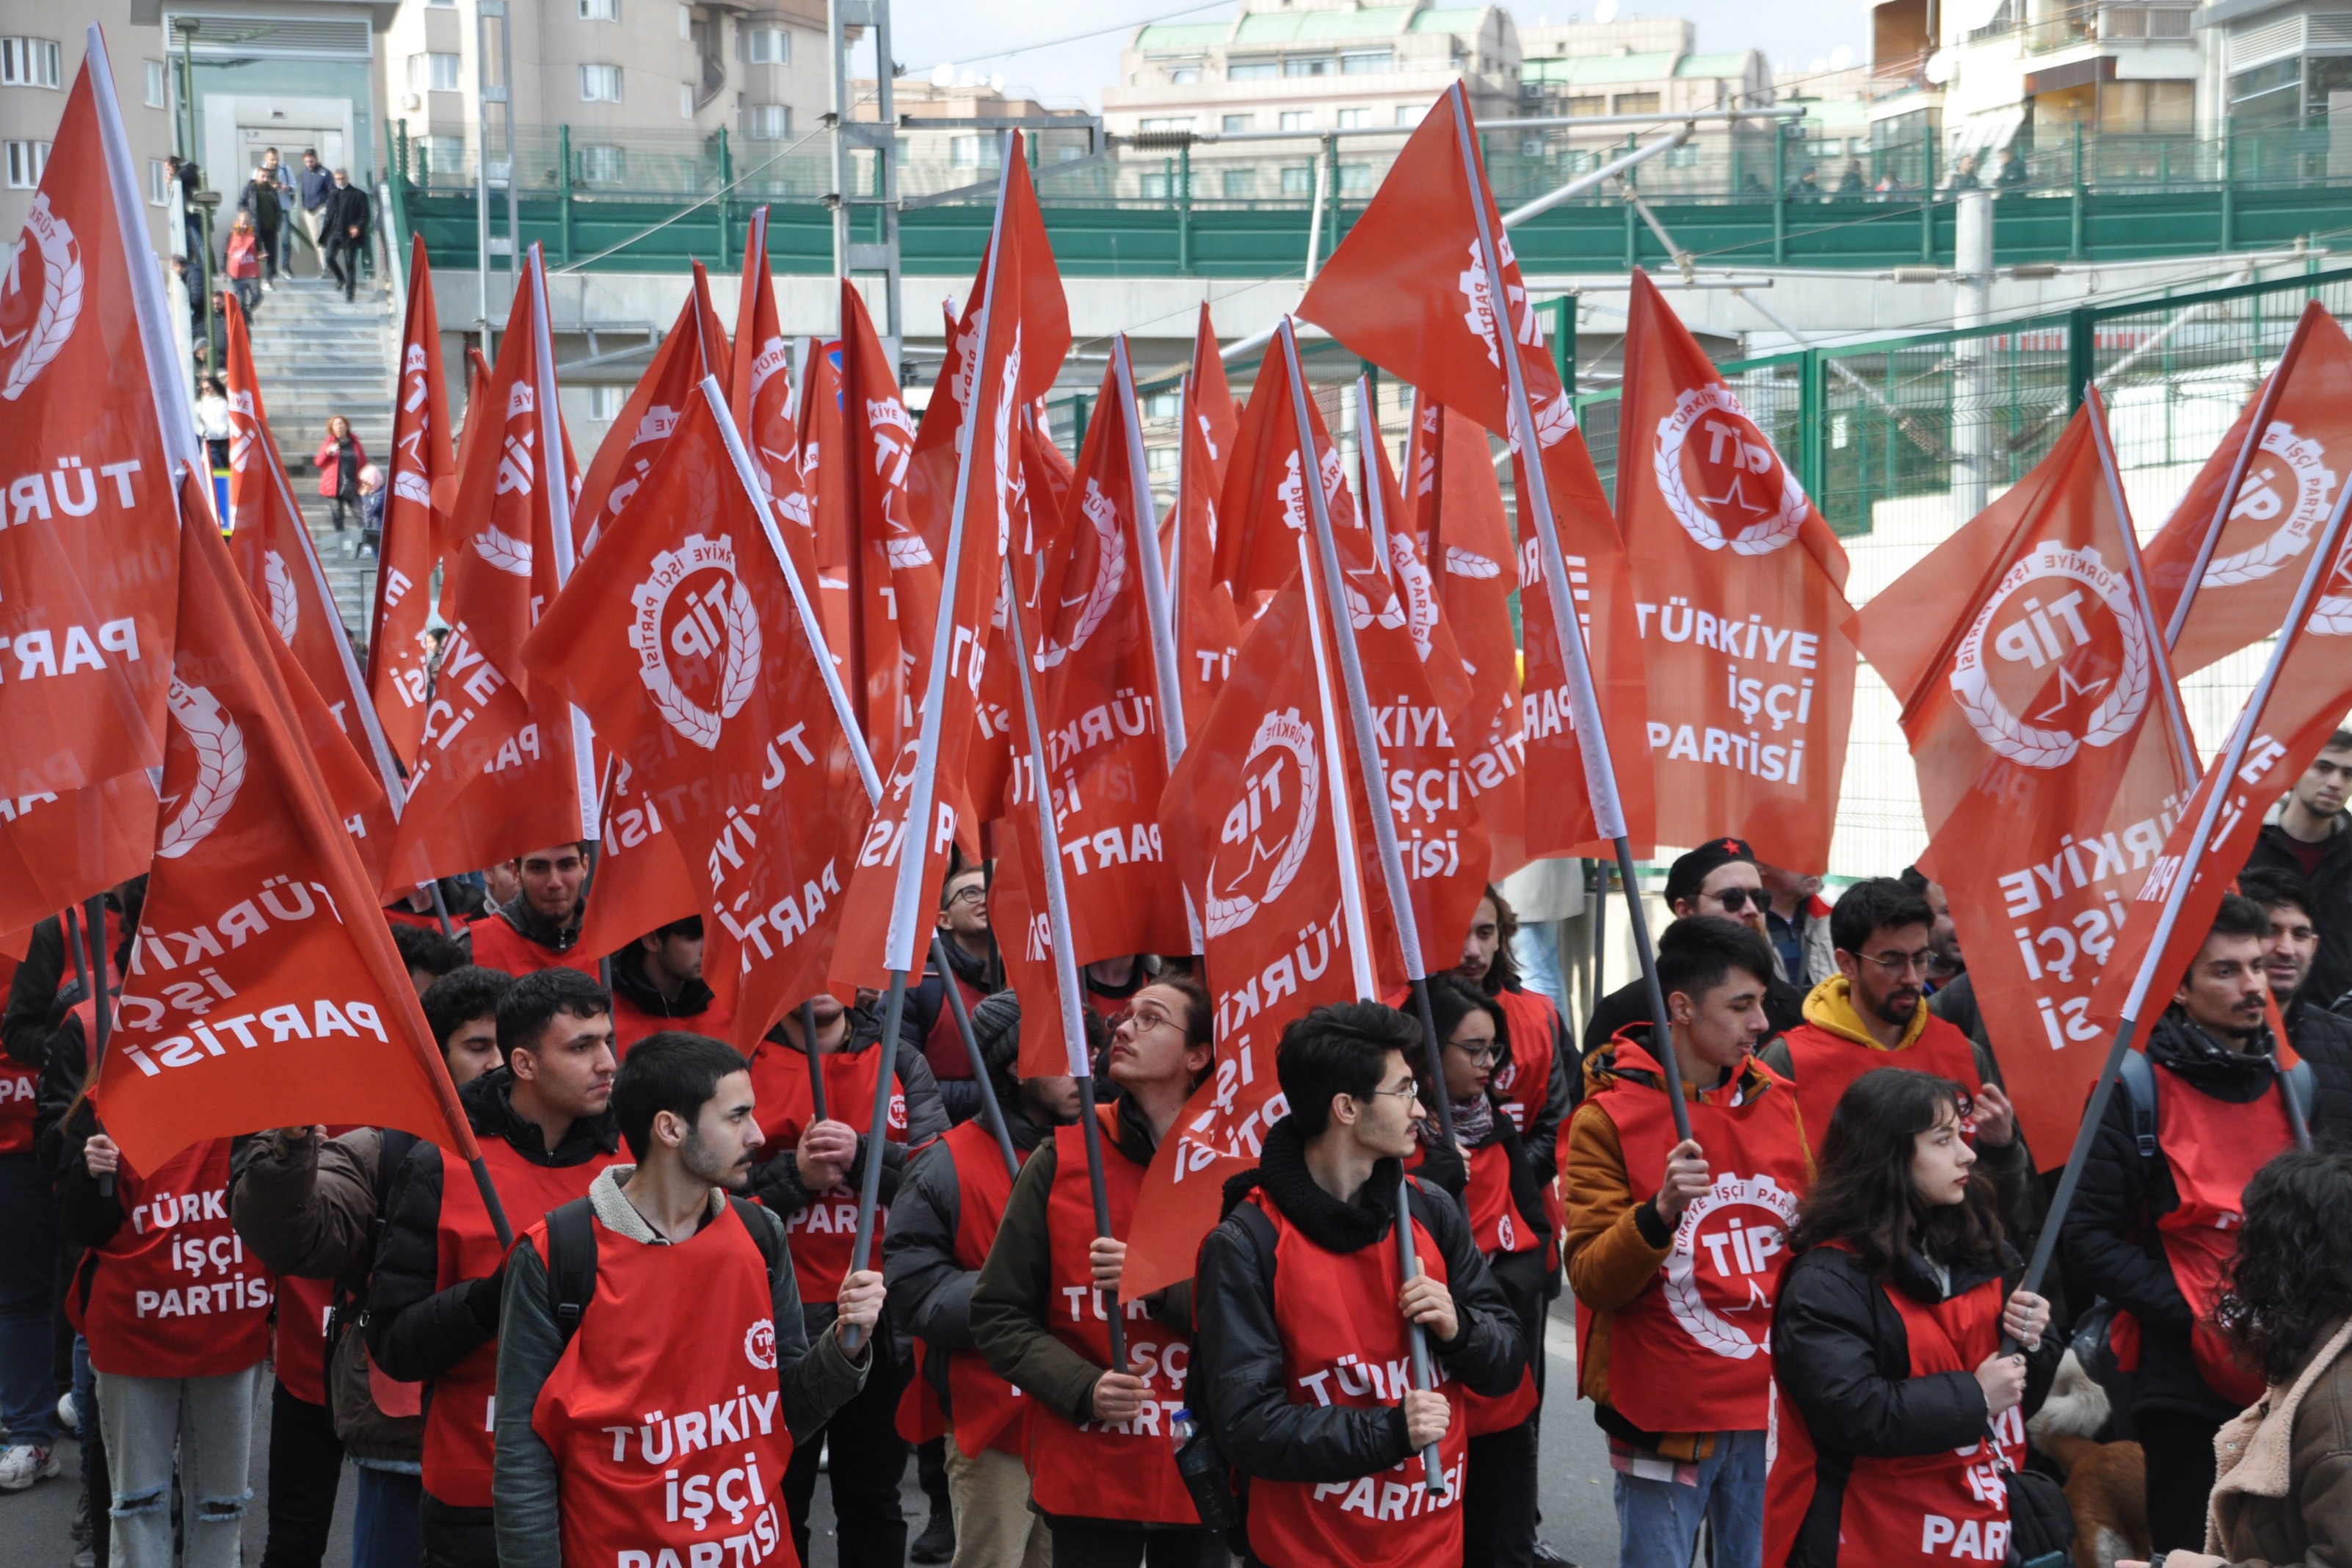 TİP'in 3 ildeki parti yönetimleri istifa etti